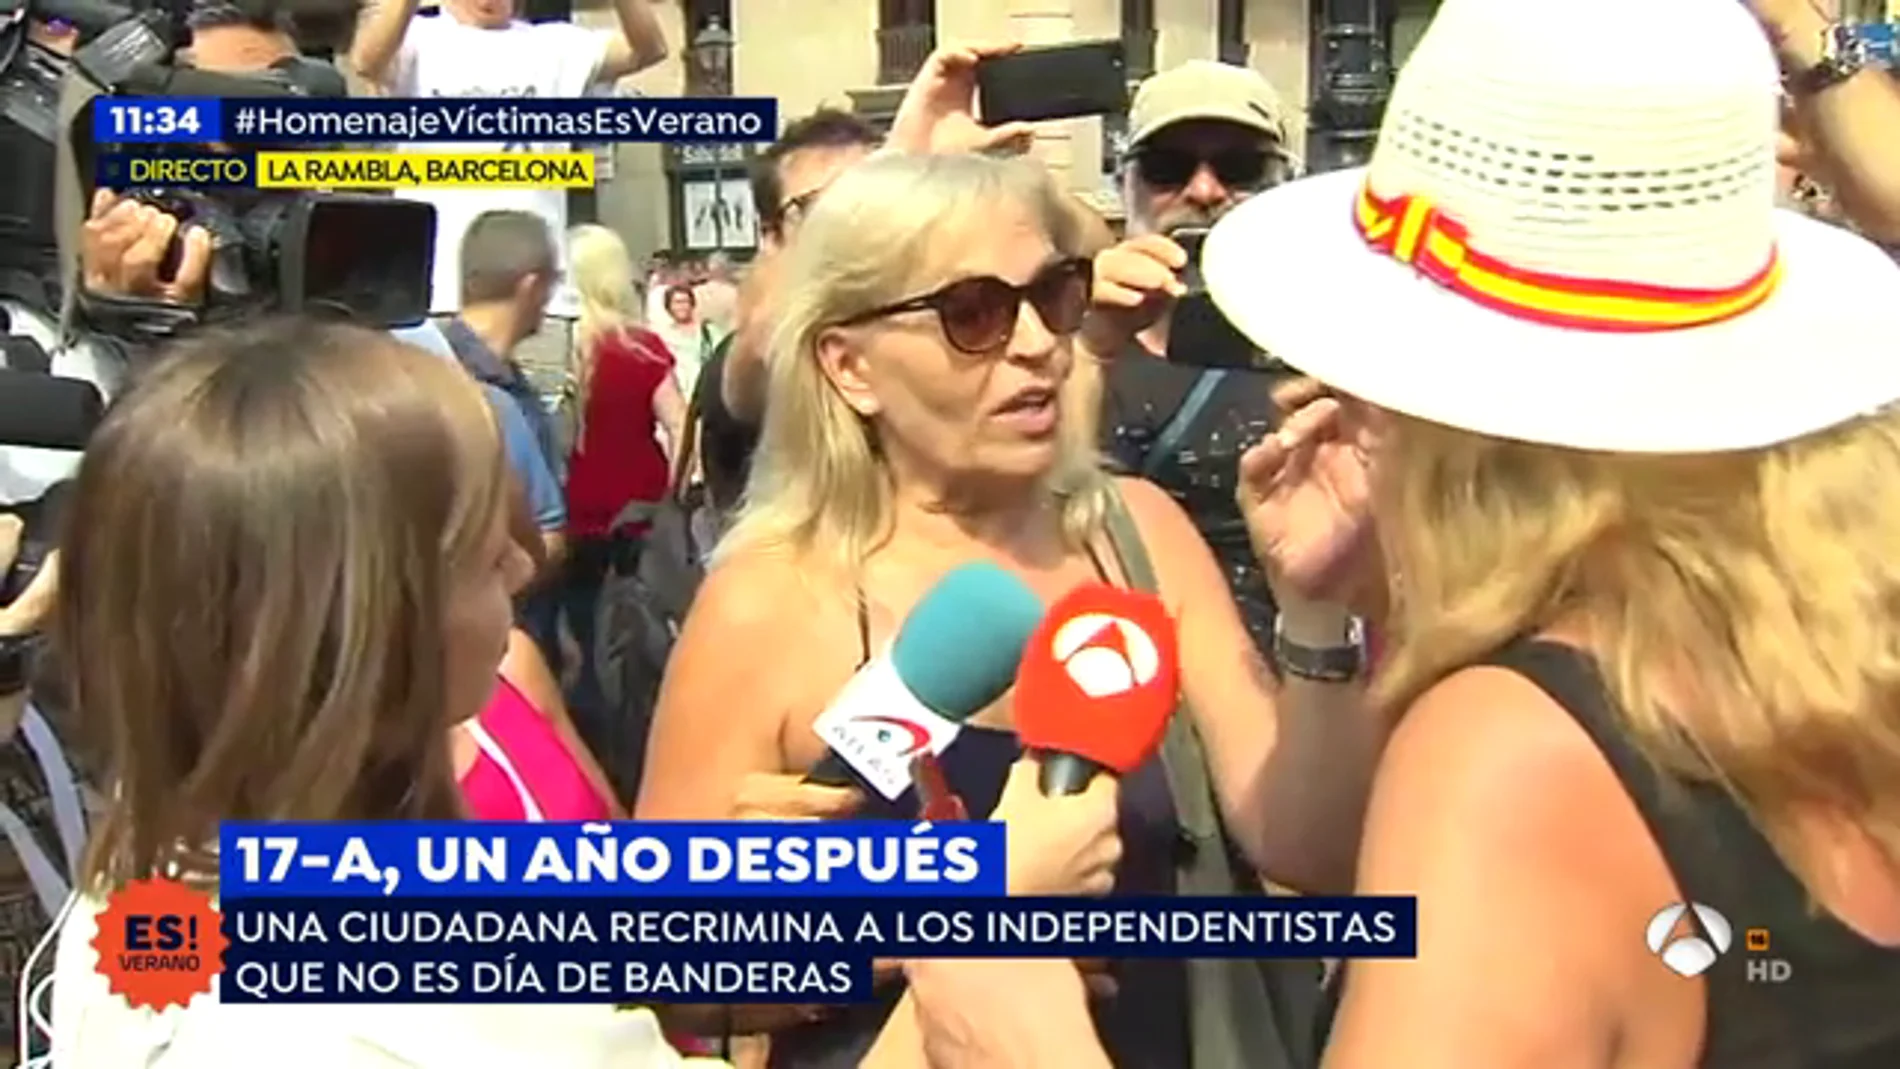 Una ciudadana a los independentistas: "Estamos aquí por las víctimas no para colgar banderas"